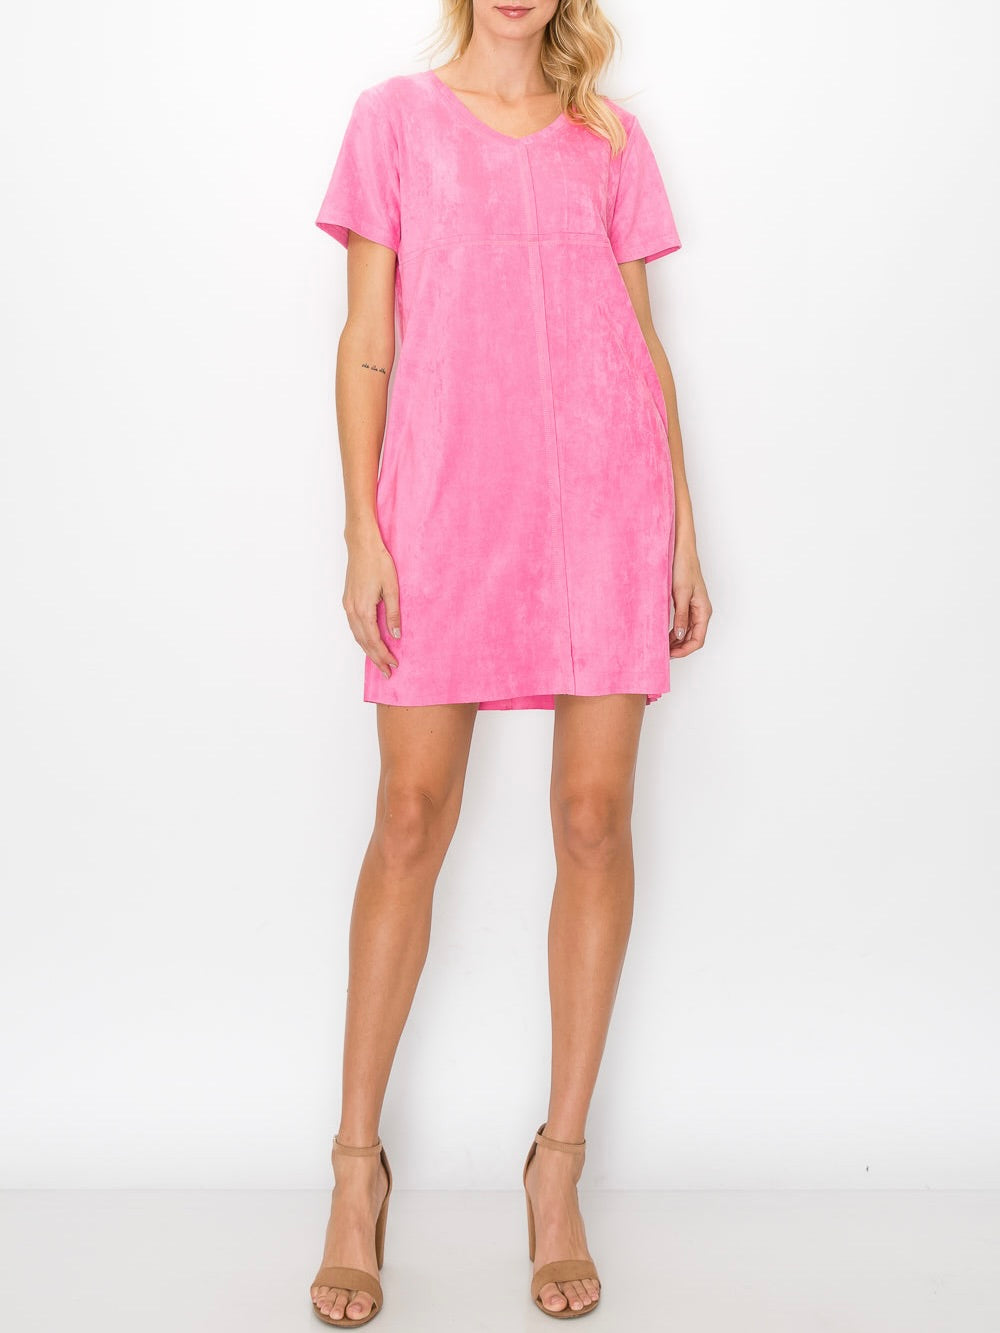 V-Neck Short Sleeve Suede Dress - Pink FINAL SALE